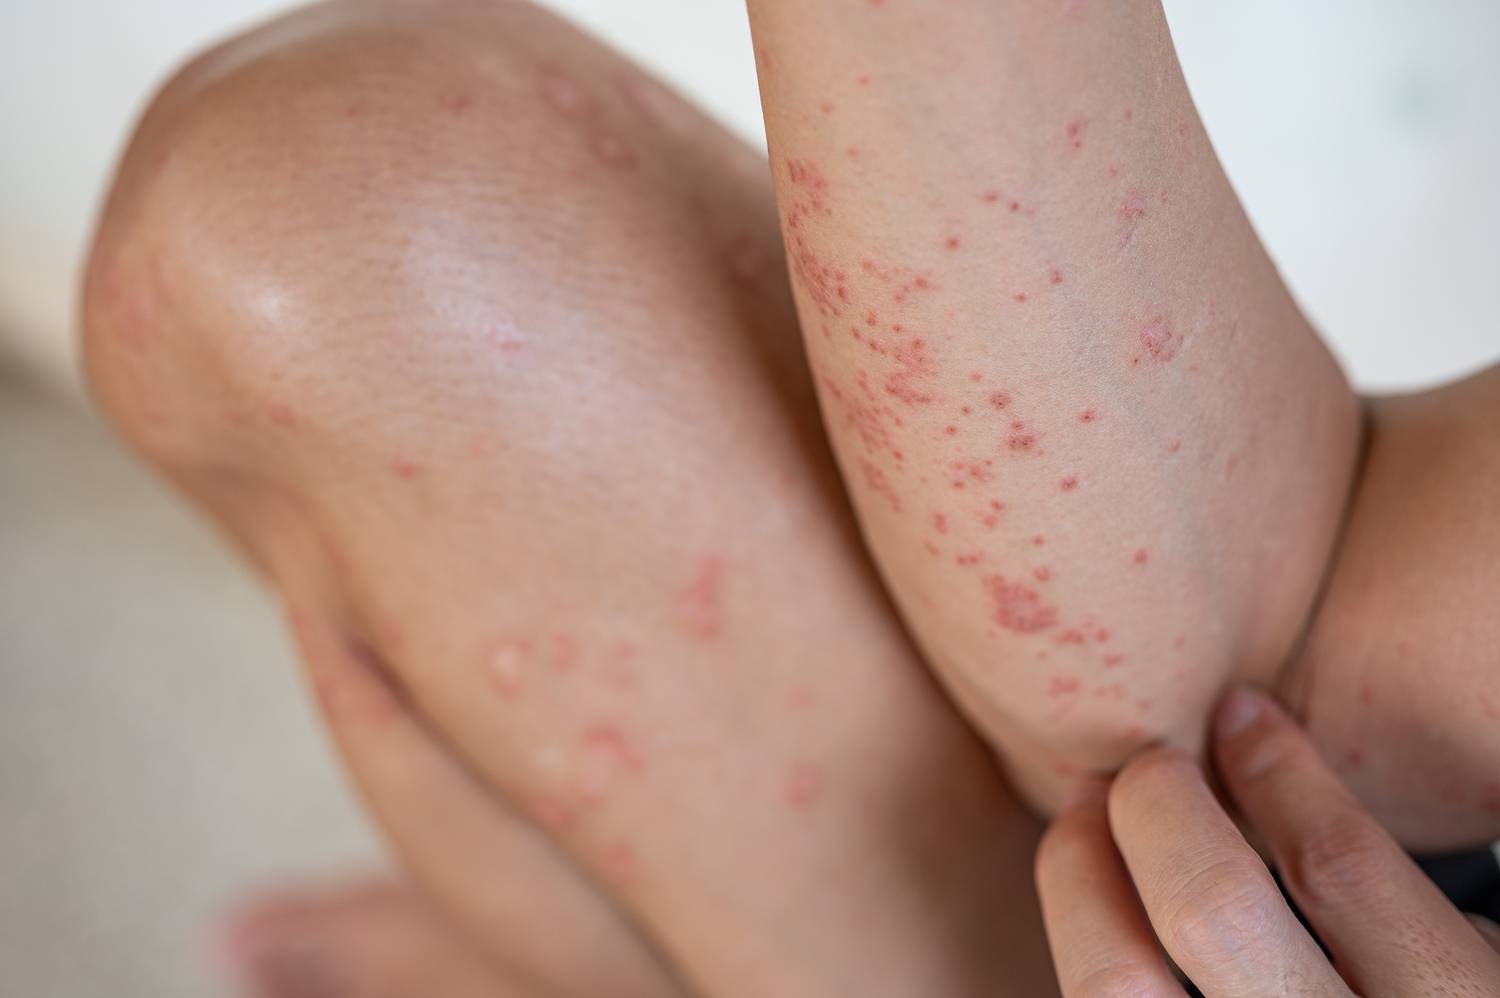 Ekcémás tünetek jelezhetik ezt a gondot: a szárazsággal, viszketéssel és hólyagosodó kiütésekkel járó dermatitis herpetiformis nevű bőrbetegség hátterében gyakran az autoimmun gluténérzékenység áll.